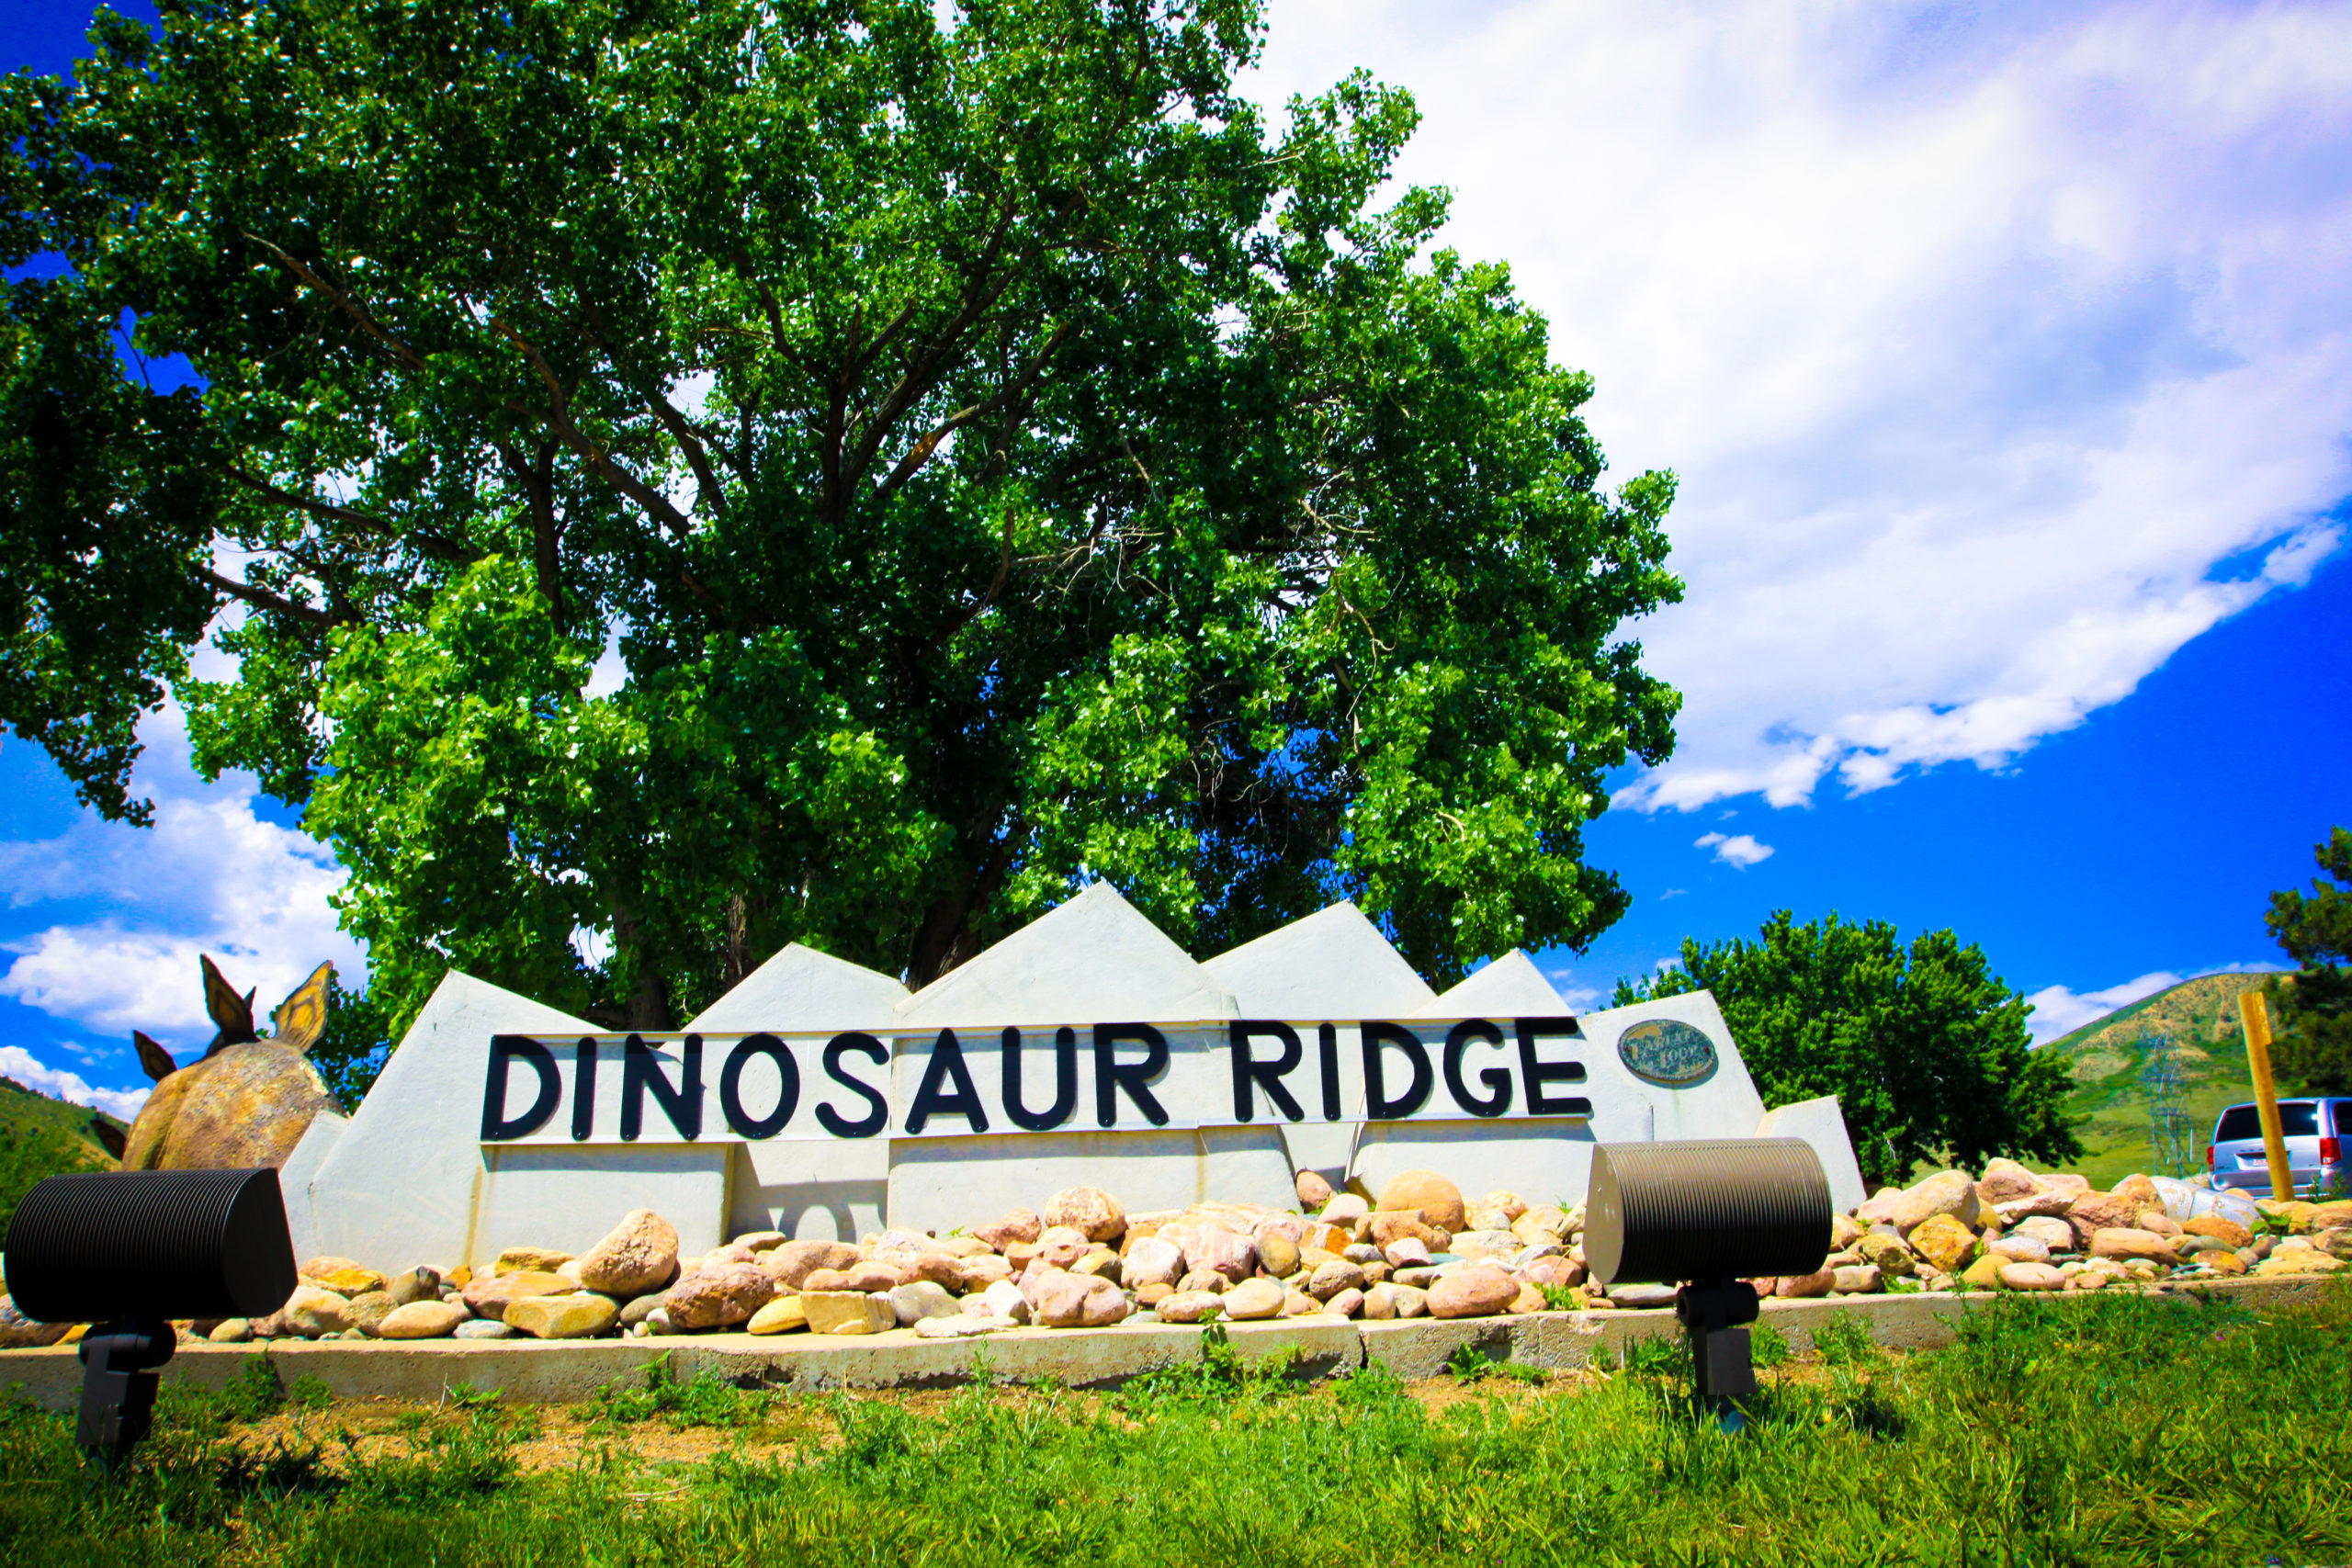 Dinosaur Freeways Virtual Program at Dinosaur Ridge